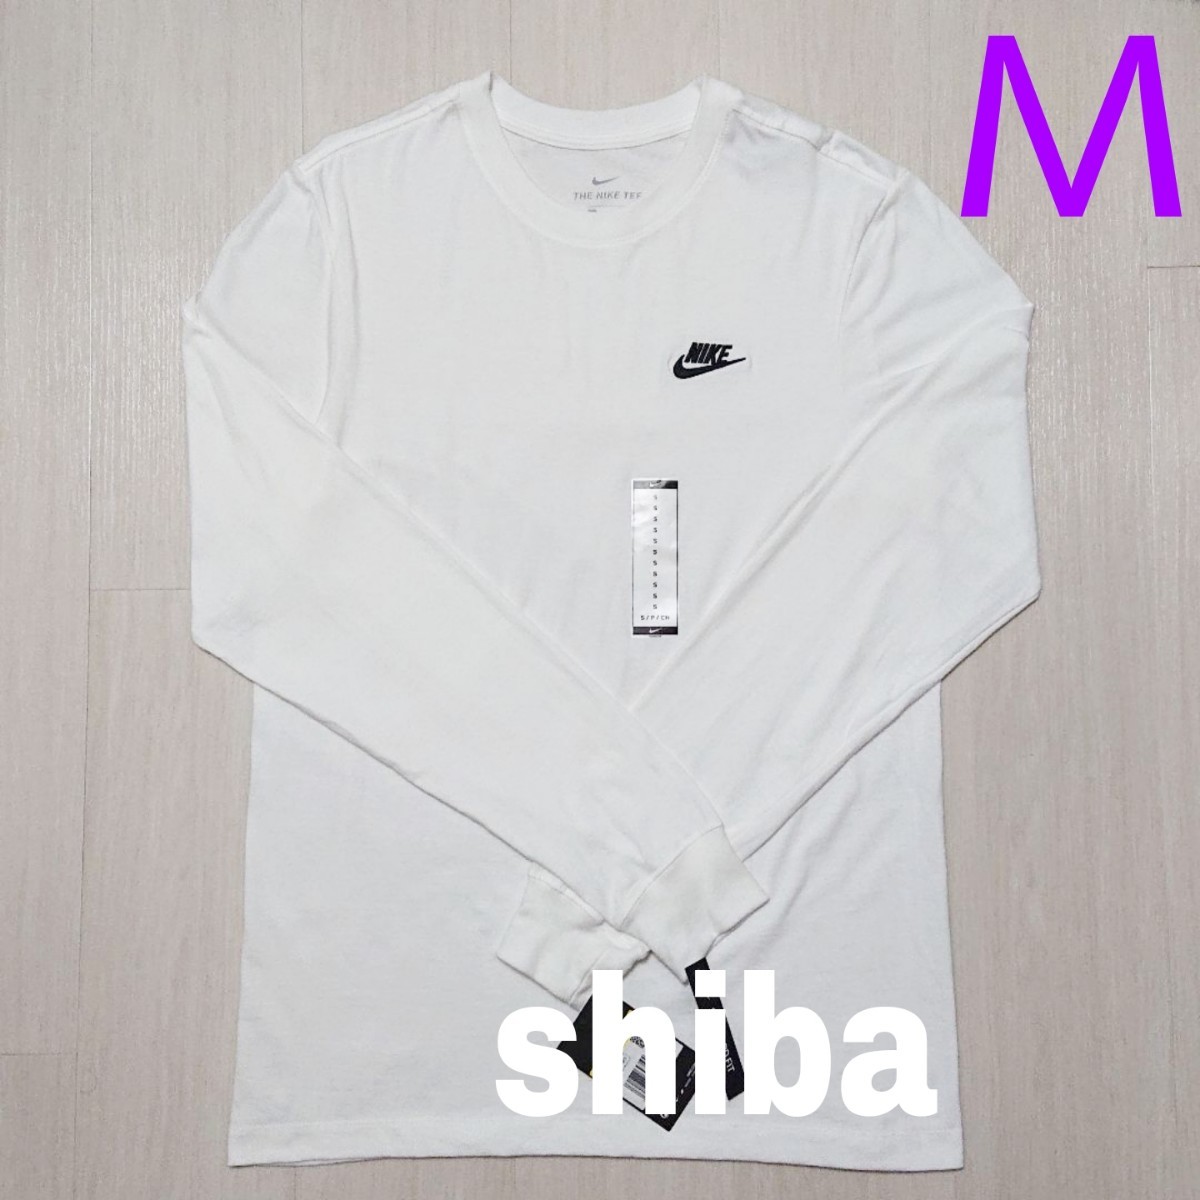 Nike  Club ナイキ クラブ 長袖 ロンT ロング tシャツ トップス ホワイト 白 海外モデル 正規品 海外Mサイズ